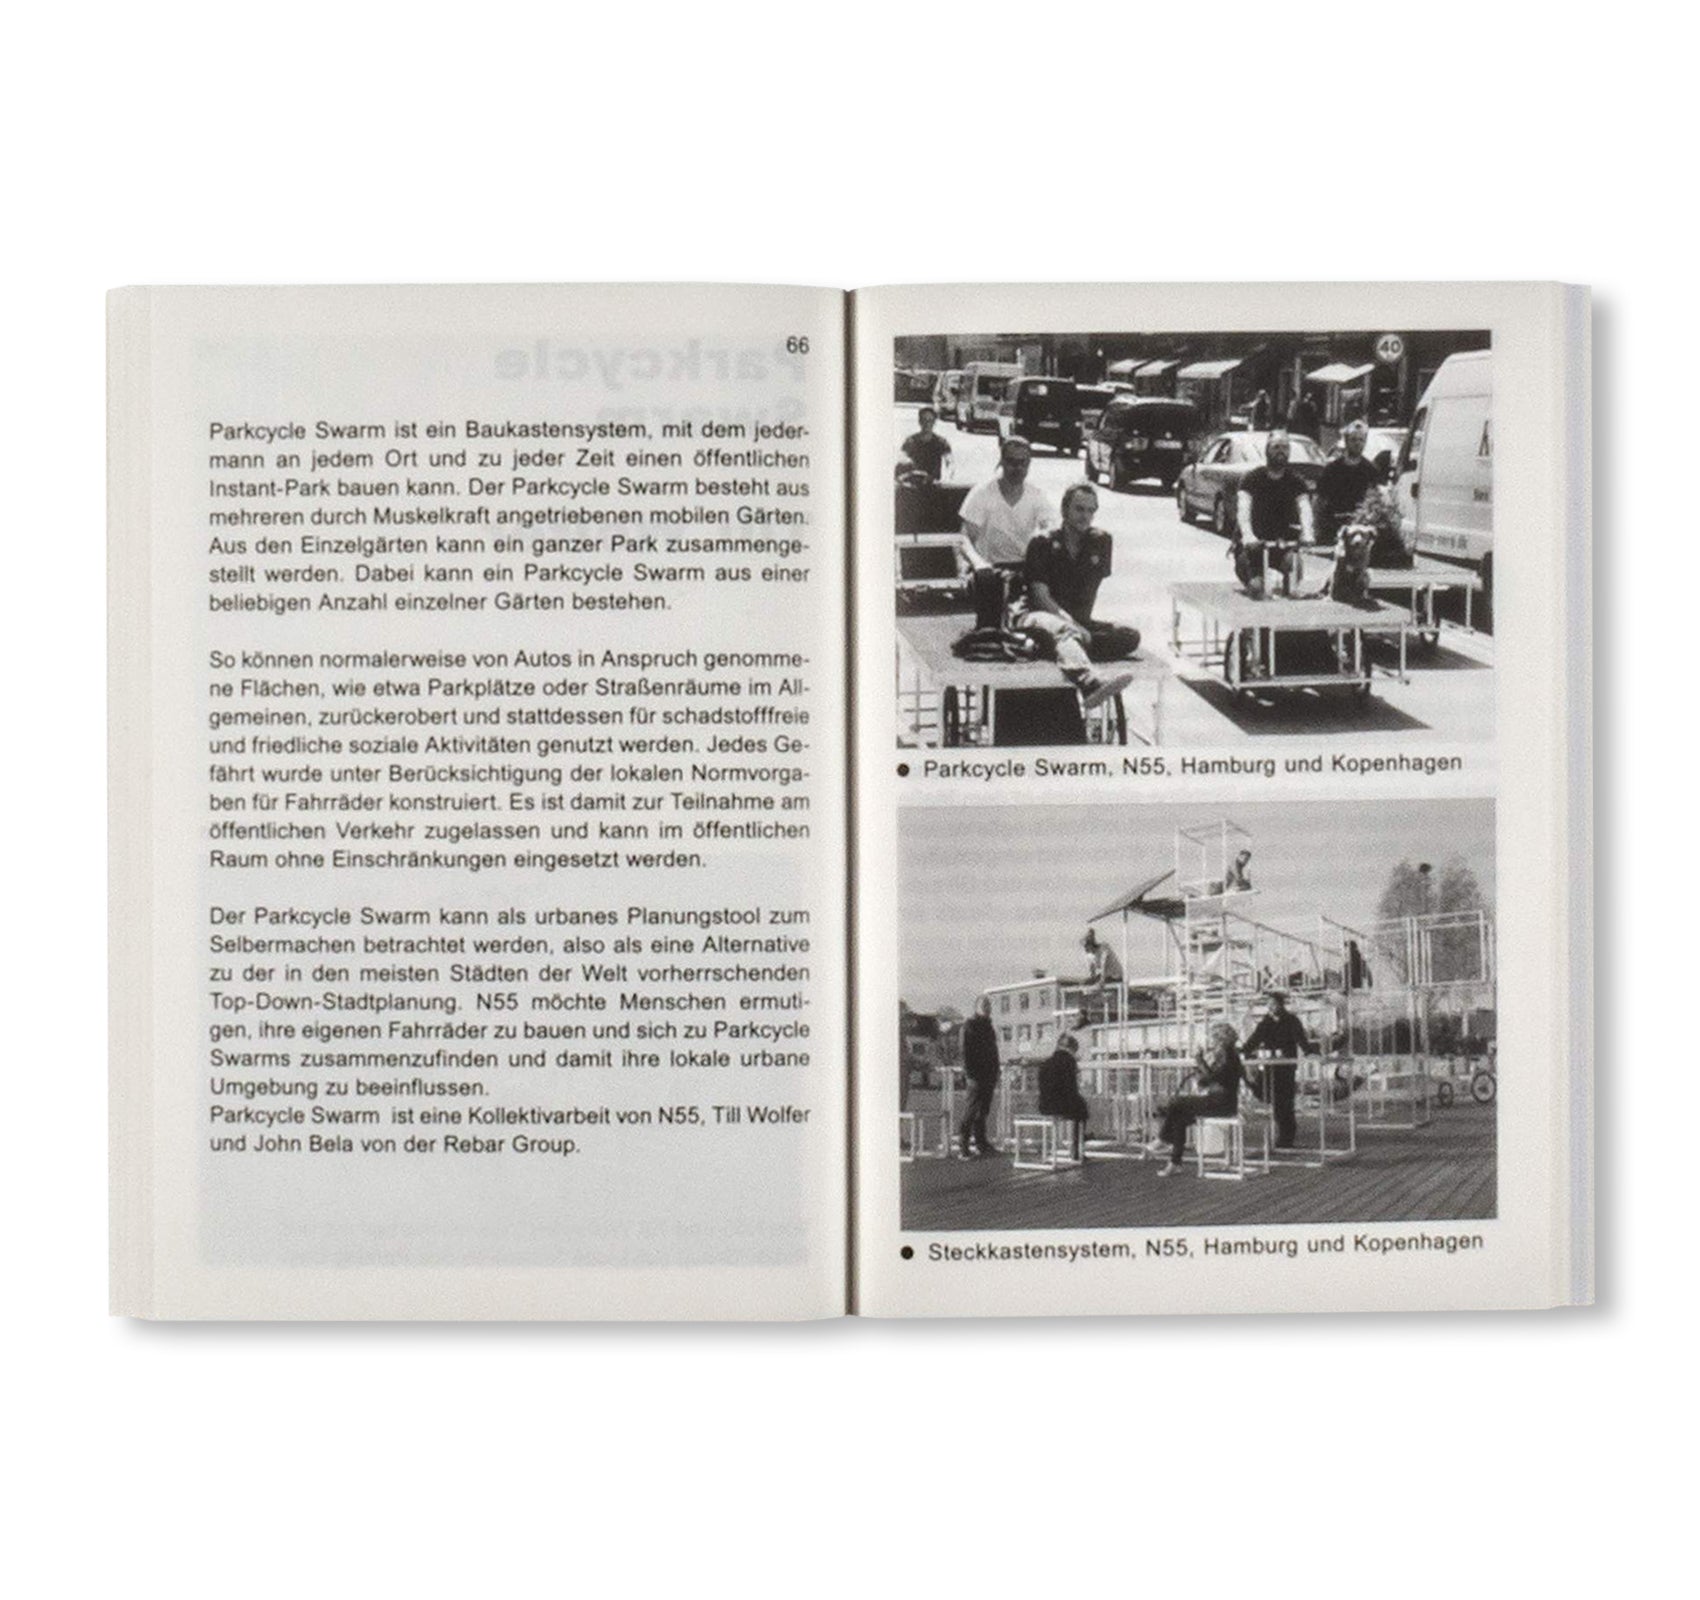 MOBILITÄTSDESIGN FÜR DIE BAUHAUS FAHRRADSTADT - Bauhaus Paperback 19 - by Stiftung Bauhaus Dessau [GERMAN EDITION]